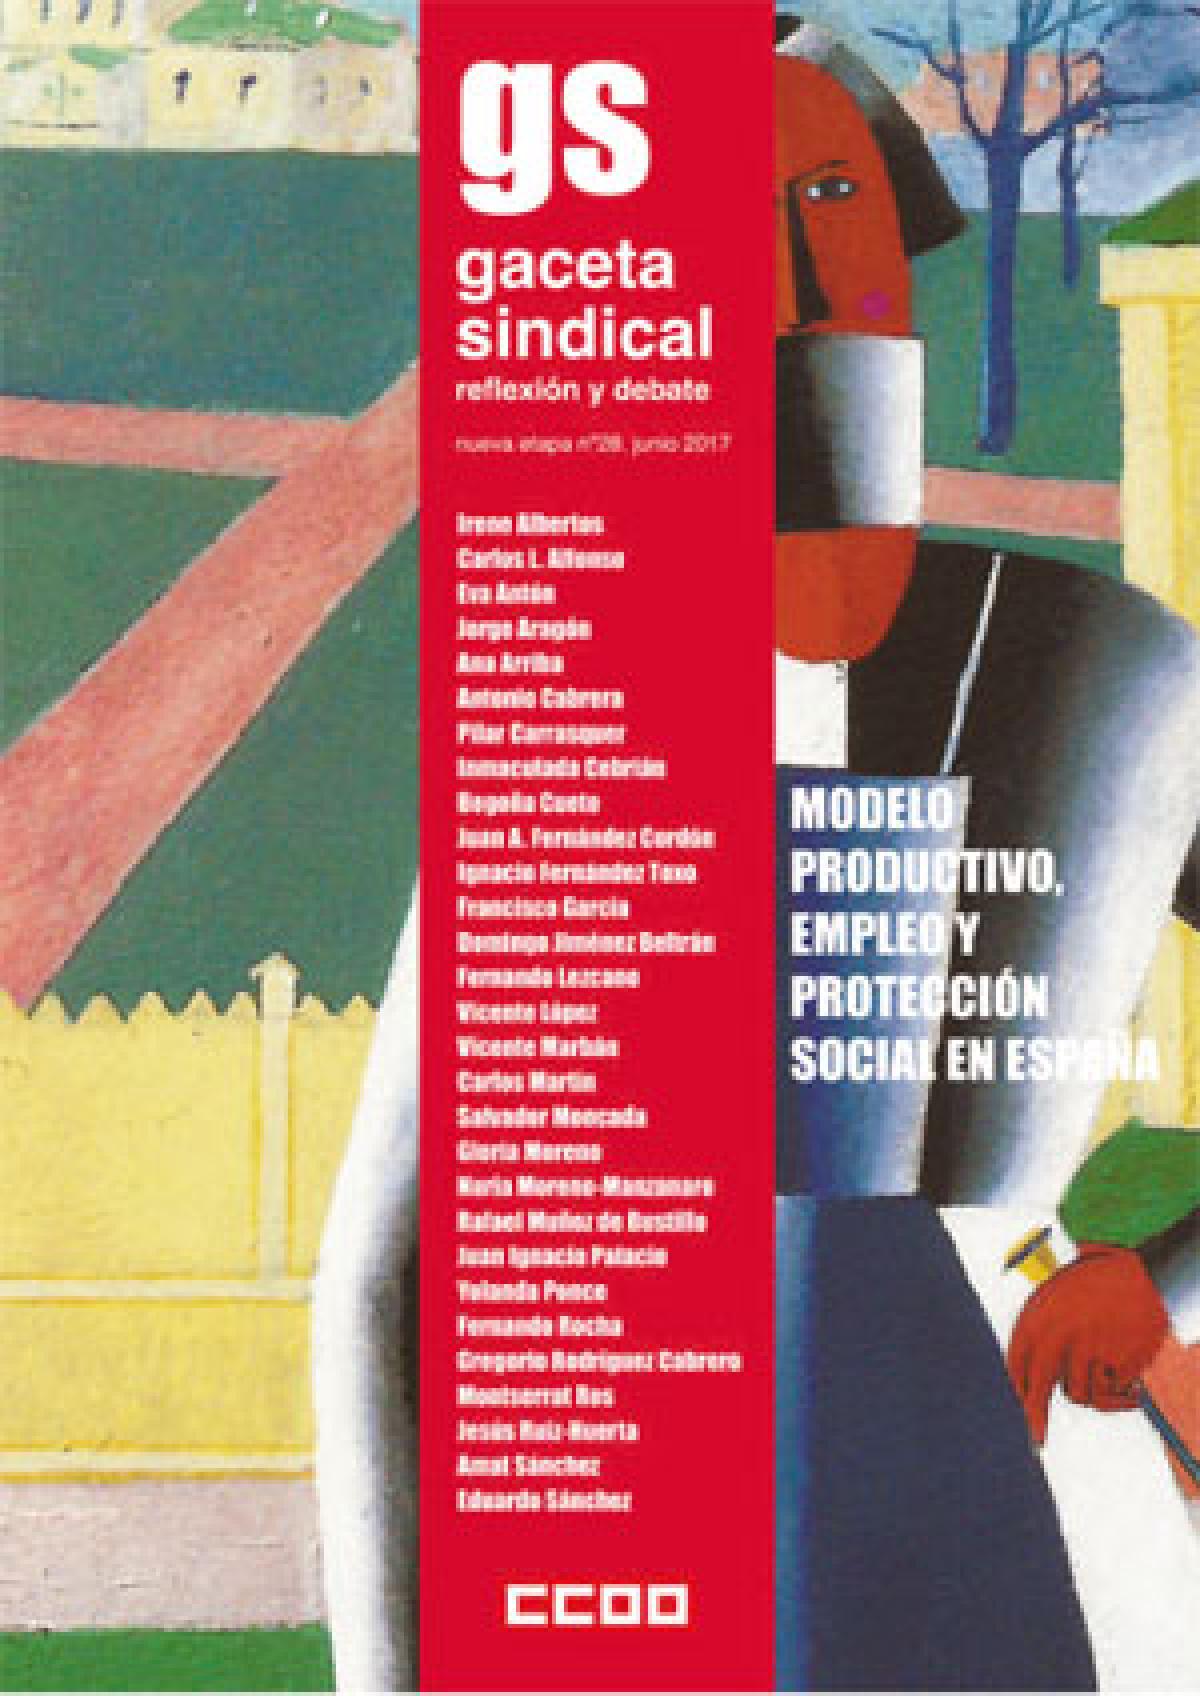 nº 28. Modelo productivo, empleo y protección social en España